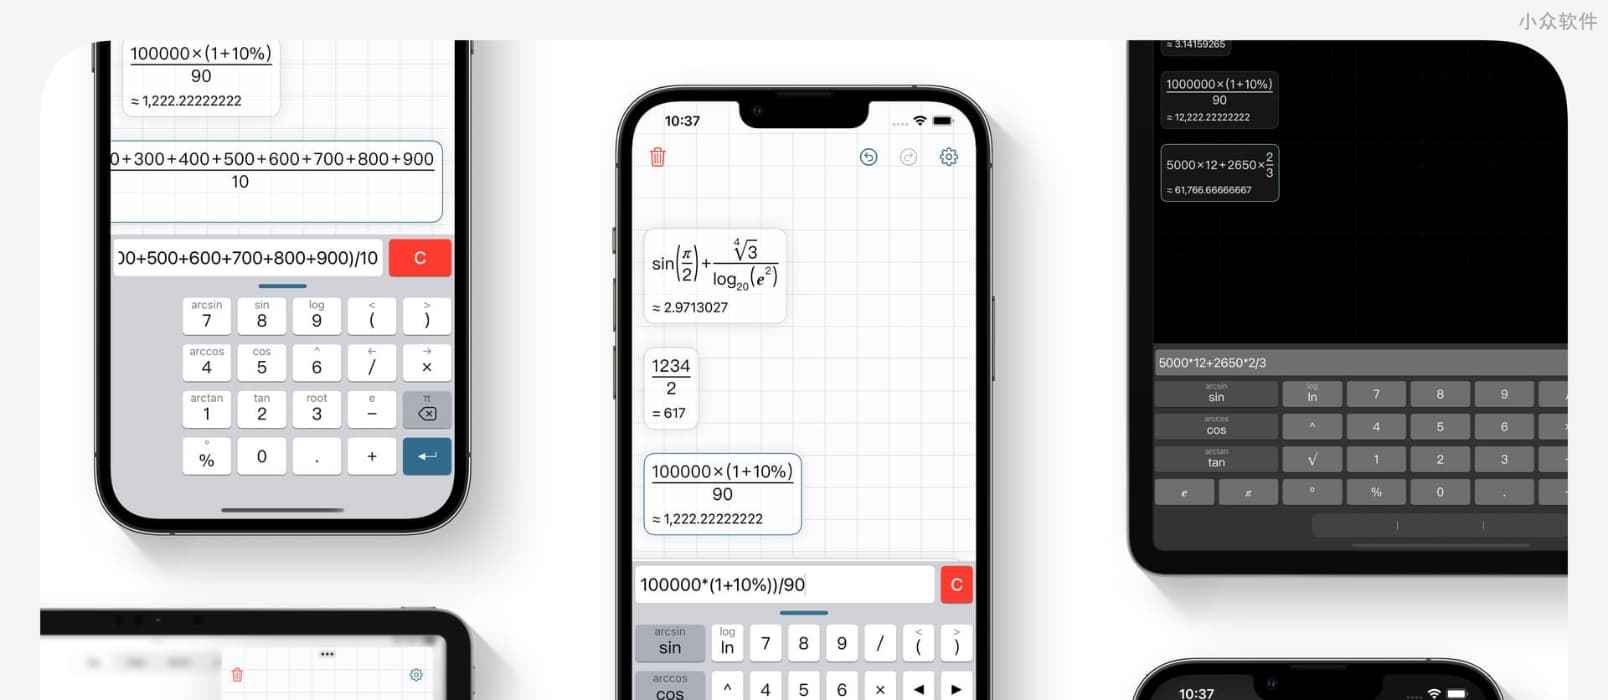 Inst 计算器 – 按书写习惯显示计算过程与结果的科学计算器应用[iPhone]